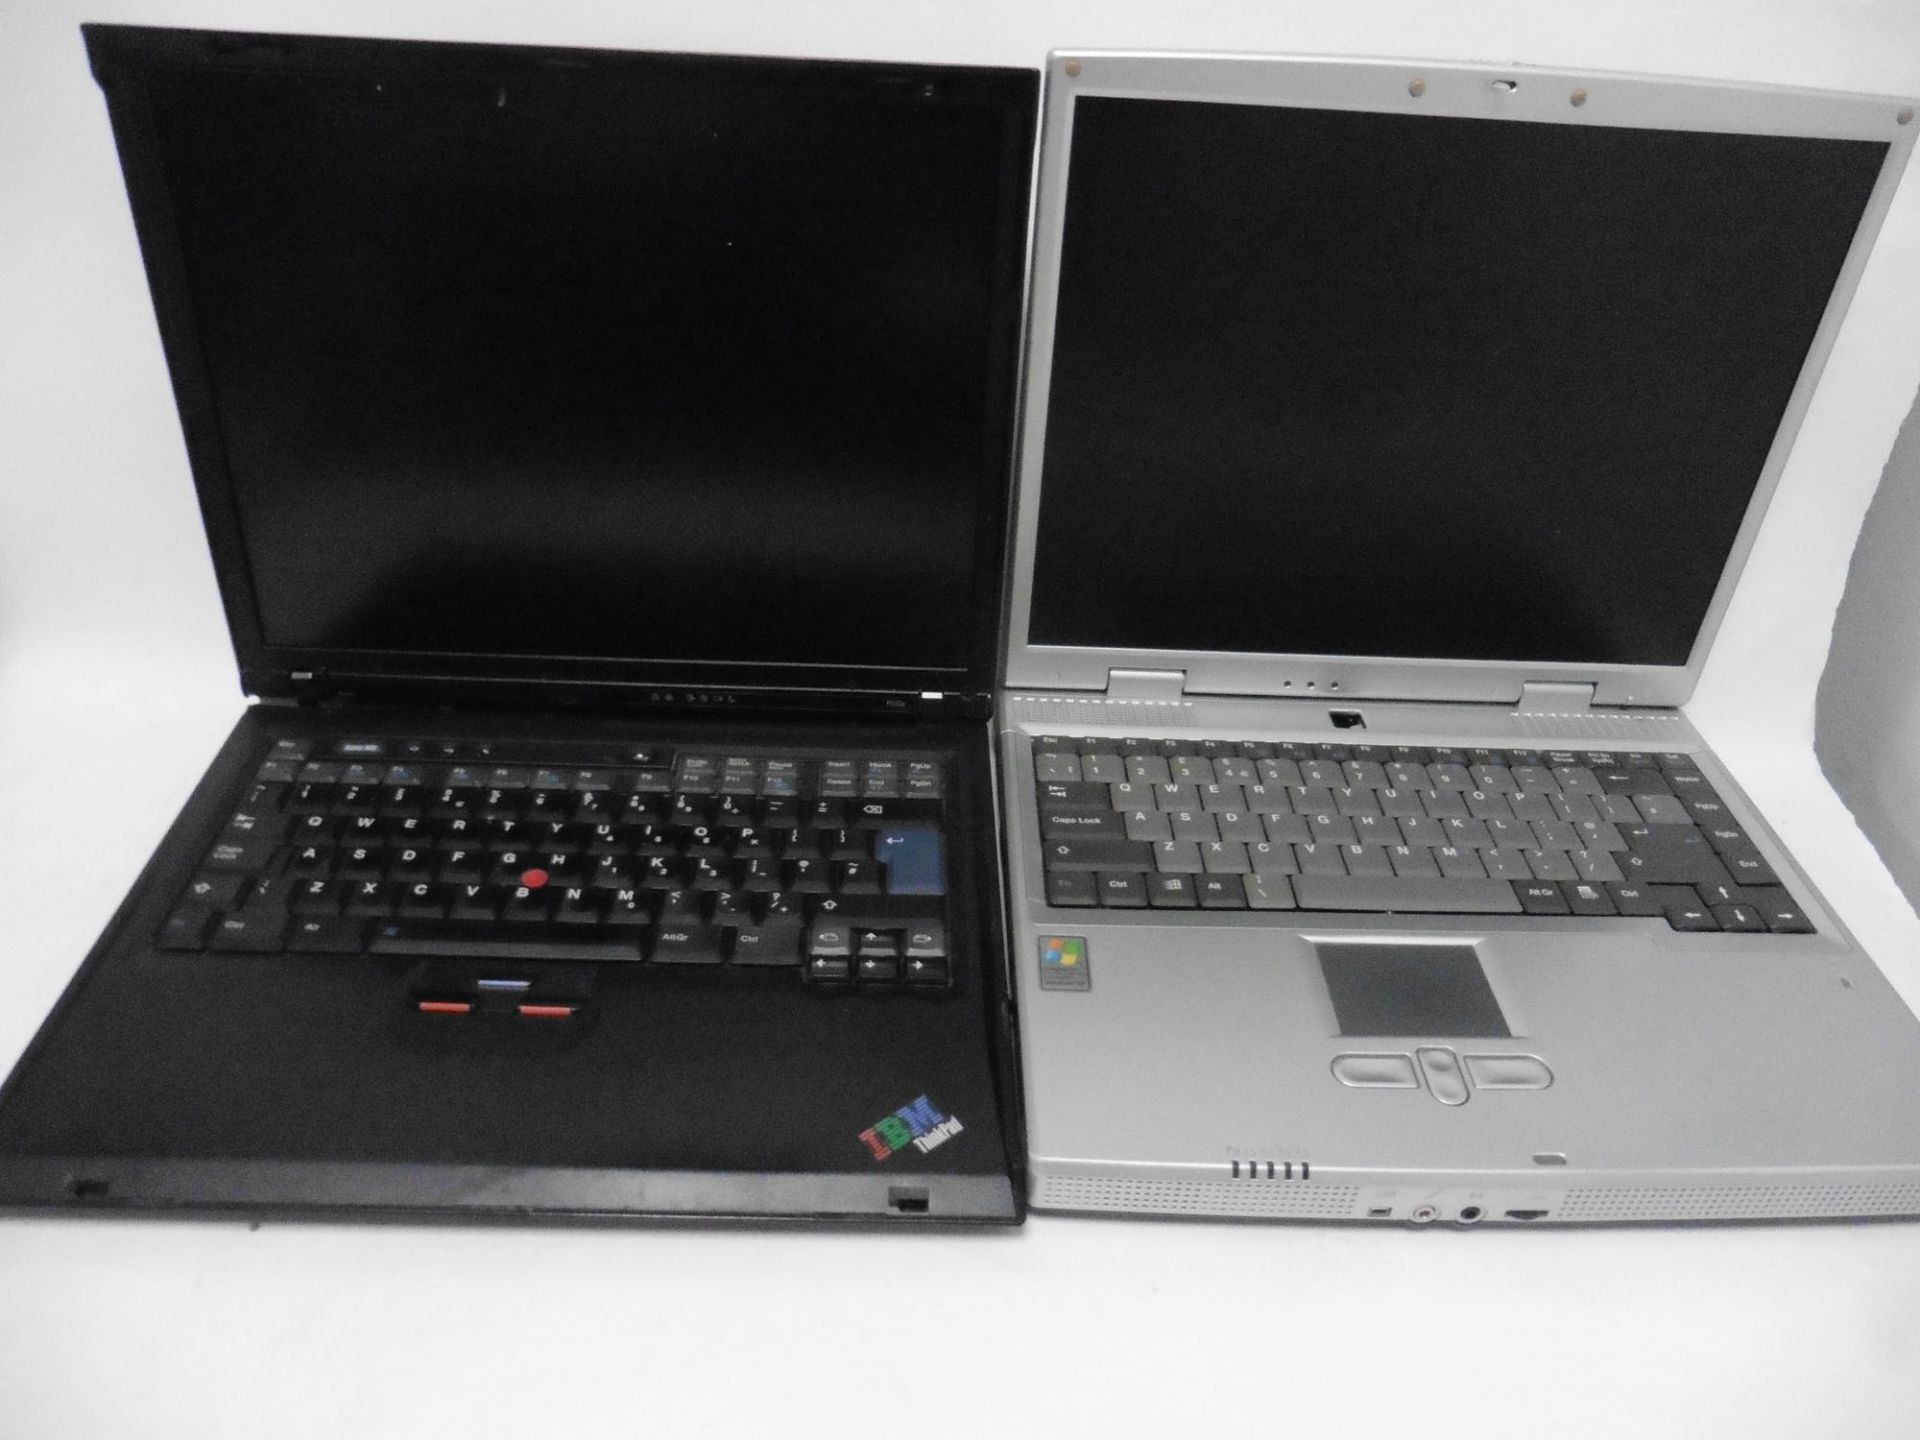 2 laptops, 1x IBM Thinkpad R50e (XP vintage) no Hard drive & 1x Time 8375 (XP vintage) no Hard drive